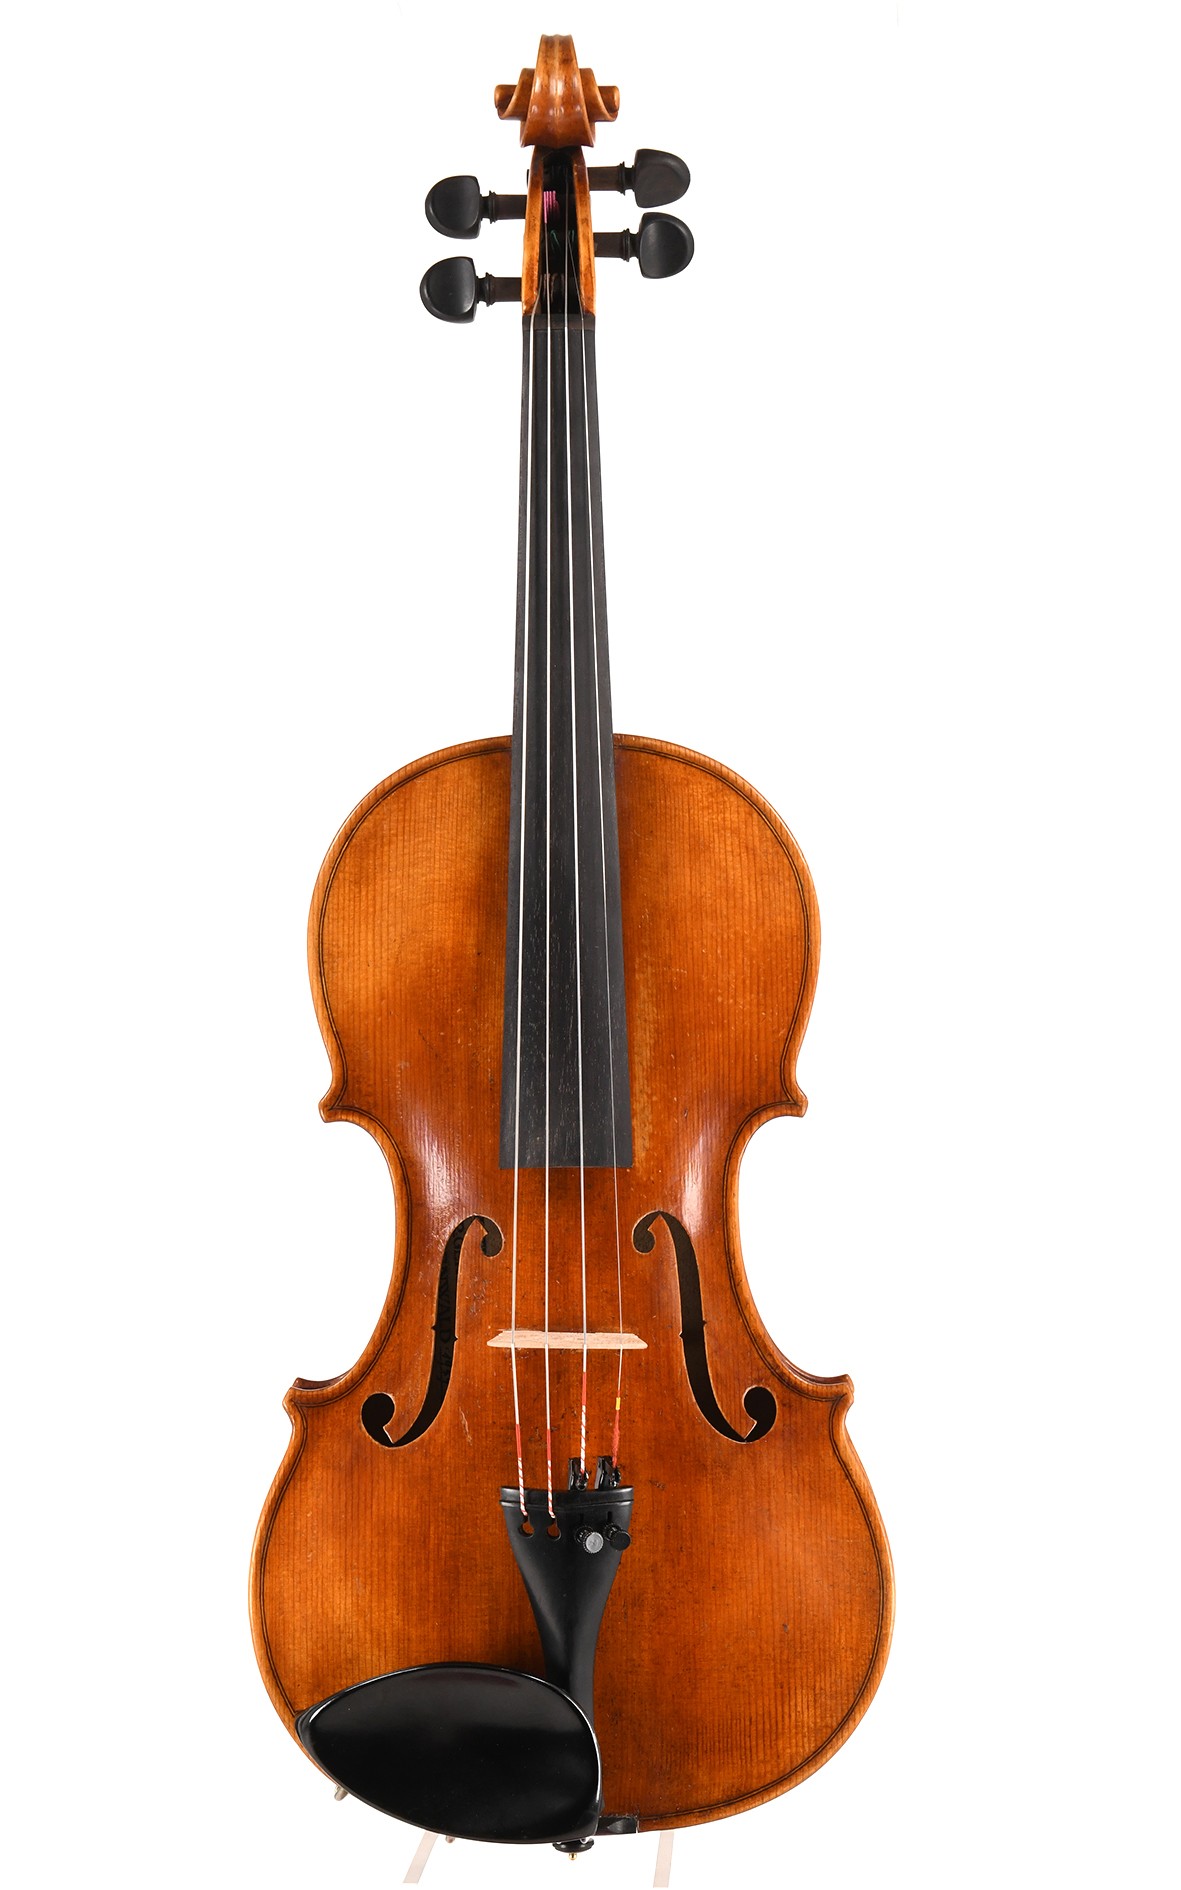 米滕瓦尔德的小提琴，小提琴制作学校 1949年